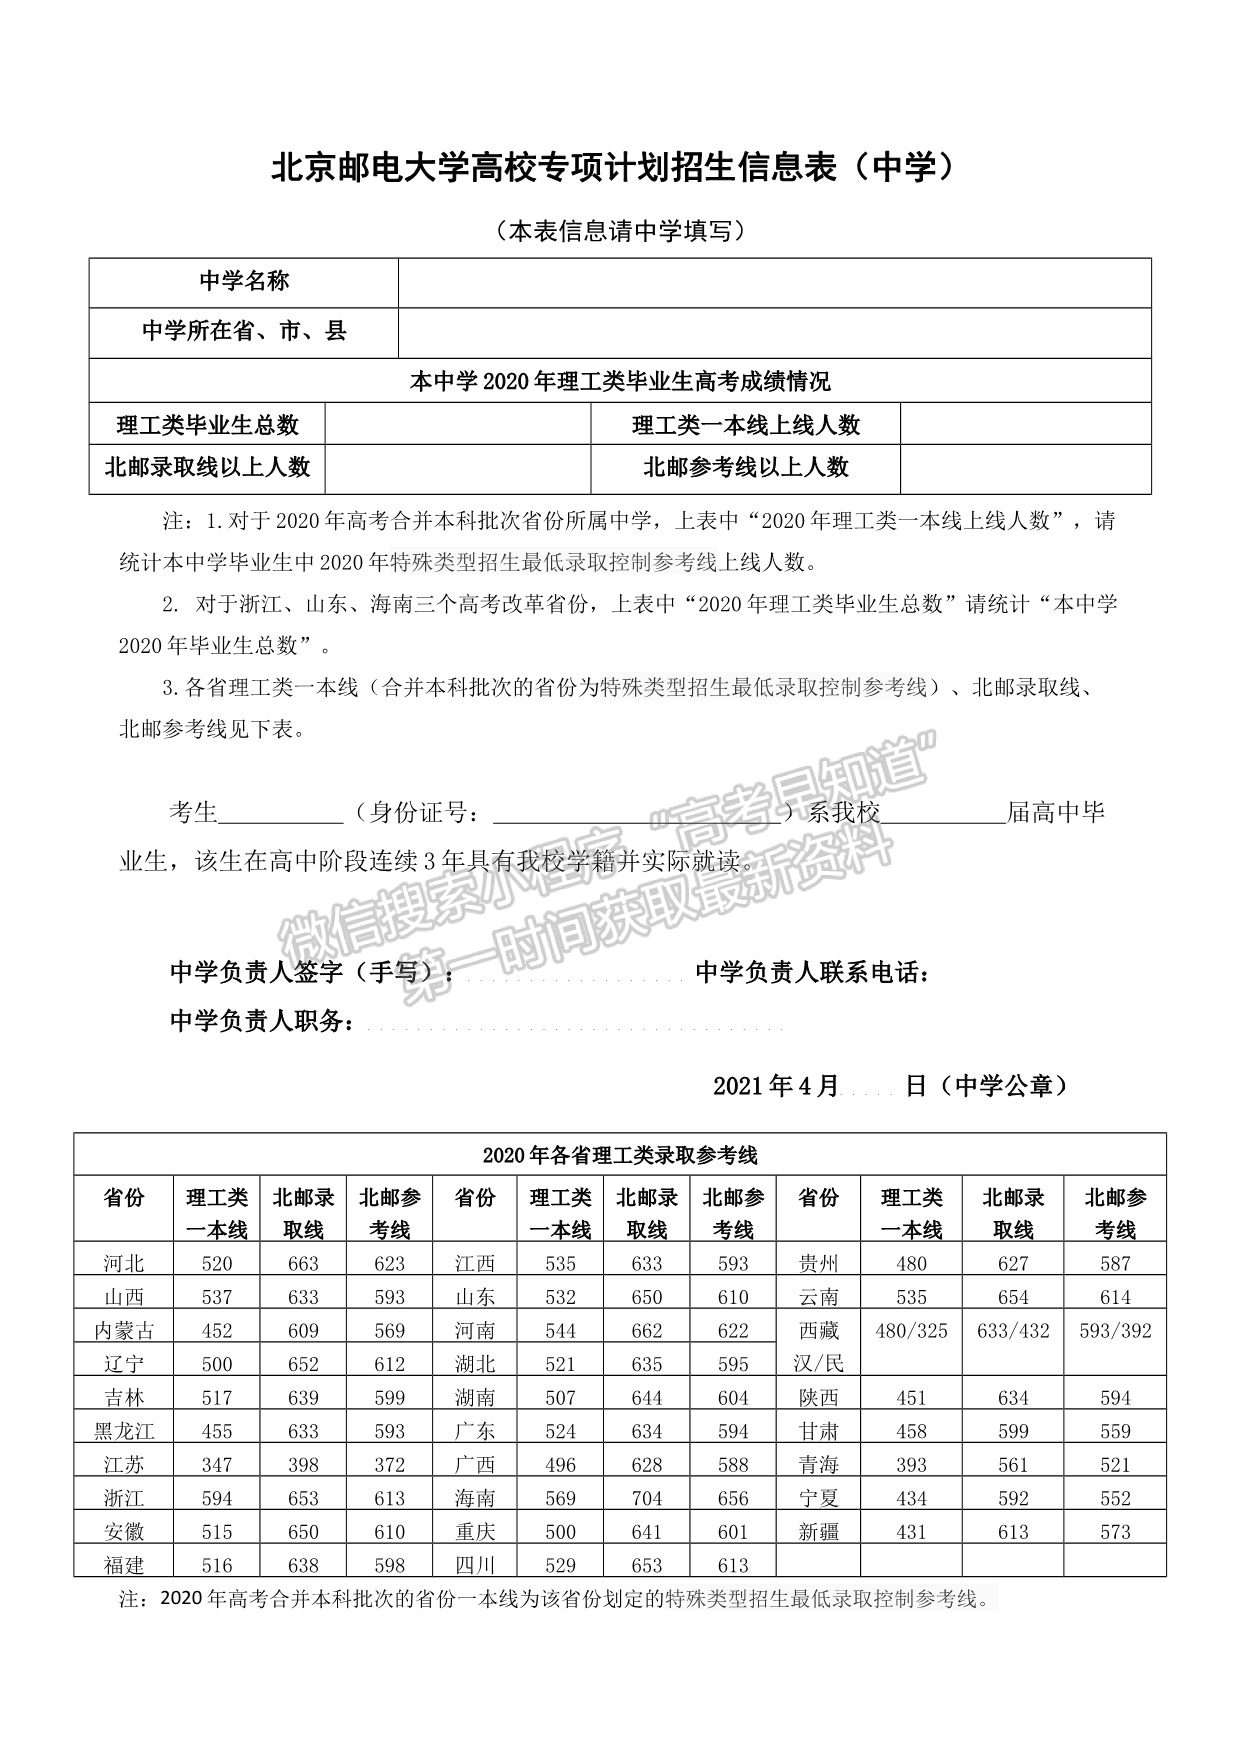 北京邮电大学2021年高校专项计划招生简章